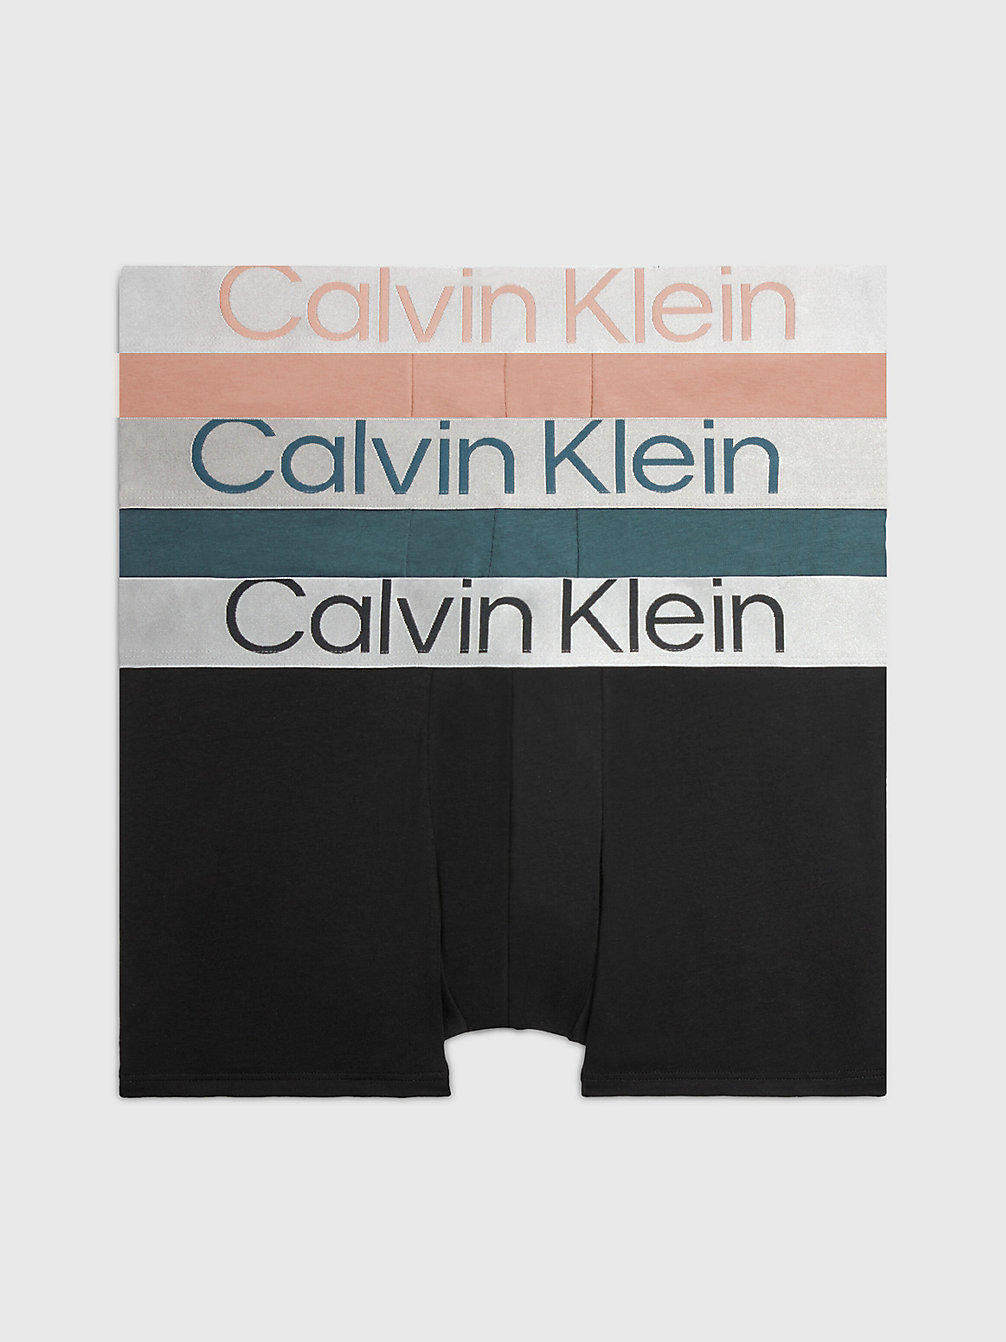 BLUE LAKE/ CLAY/ BLACK > Комплект боксеров 3 шт. – Steel Cotton > undefined женщины - Calvin Klein